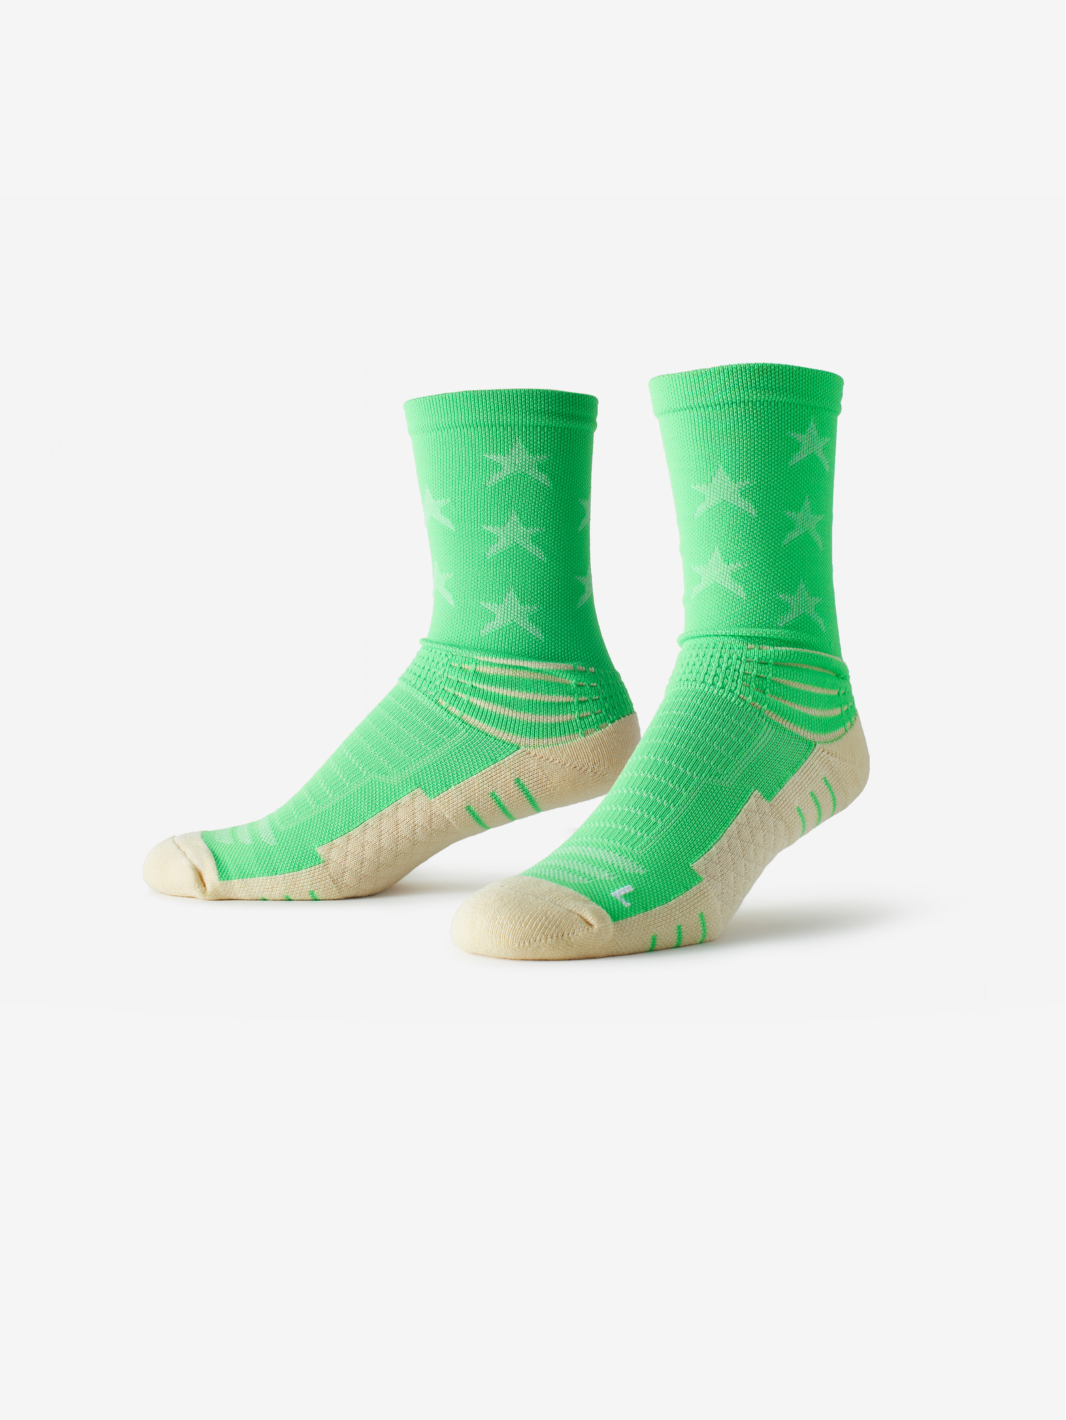 Athletic Ankle Socks | Best Anti Blister Socks | SMRTFT | Athletic Star Mid High Sock